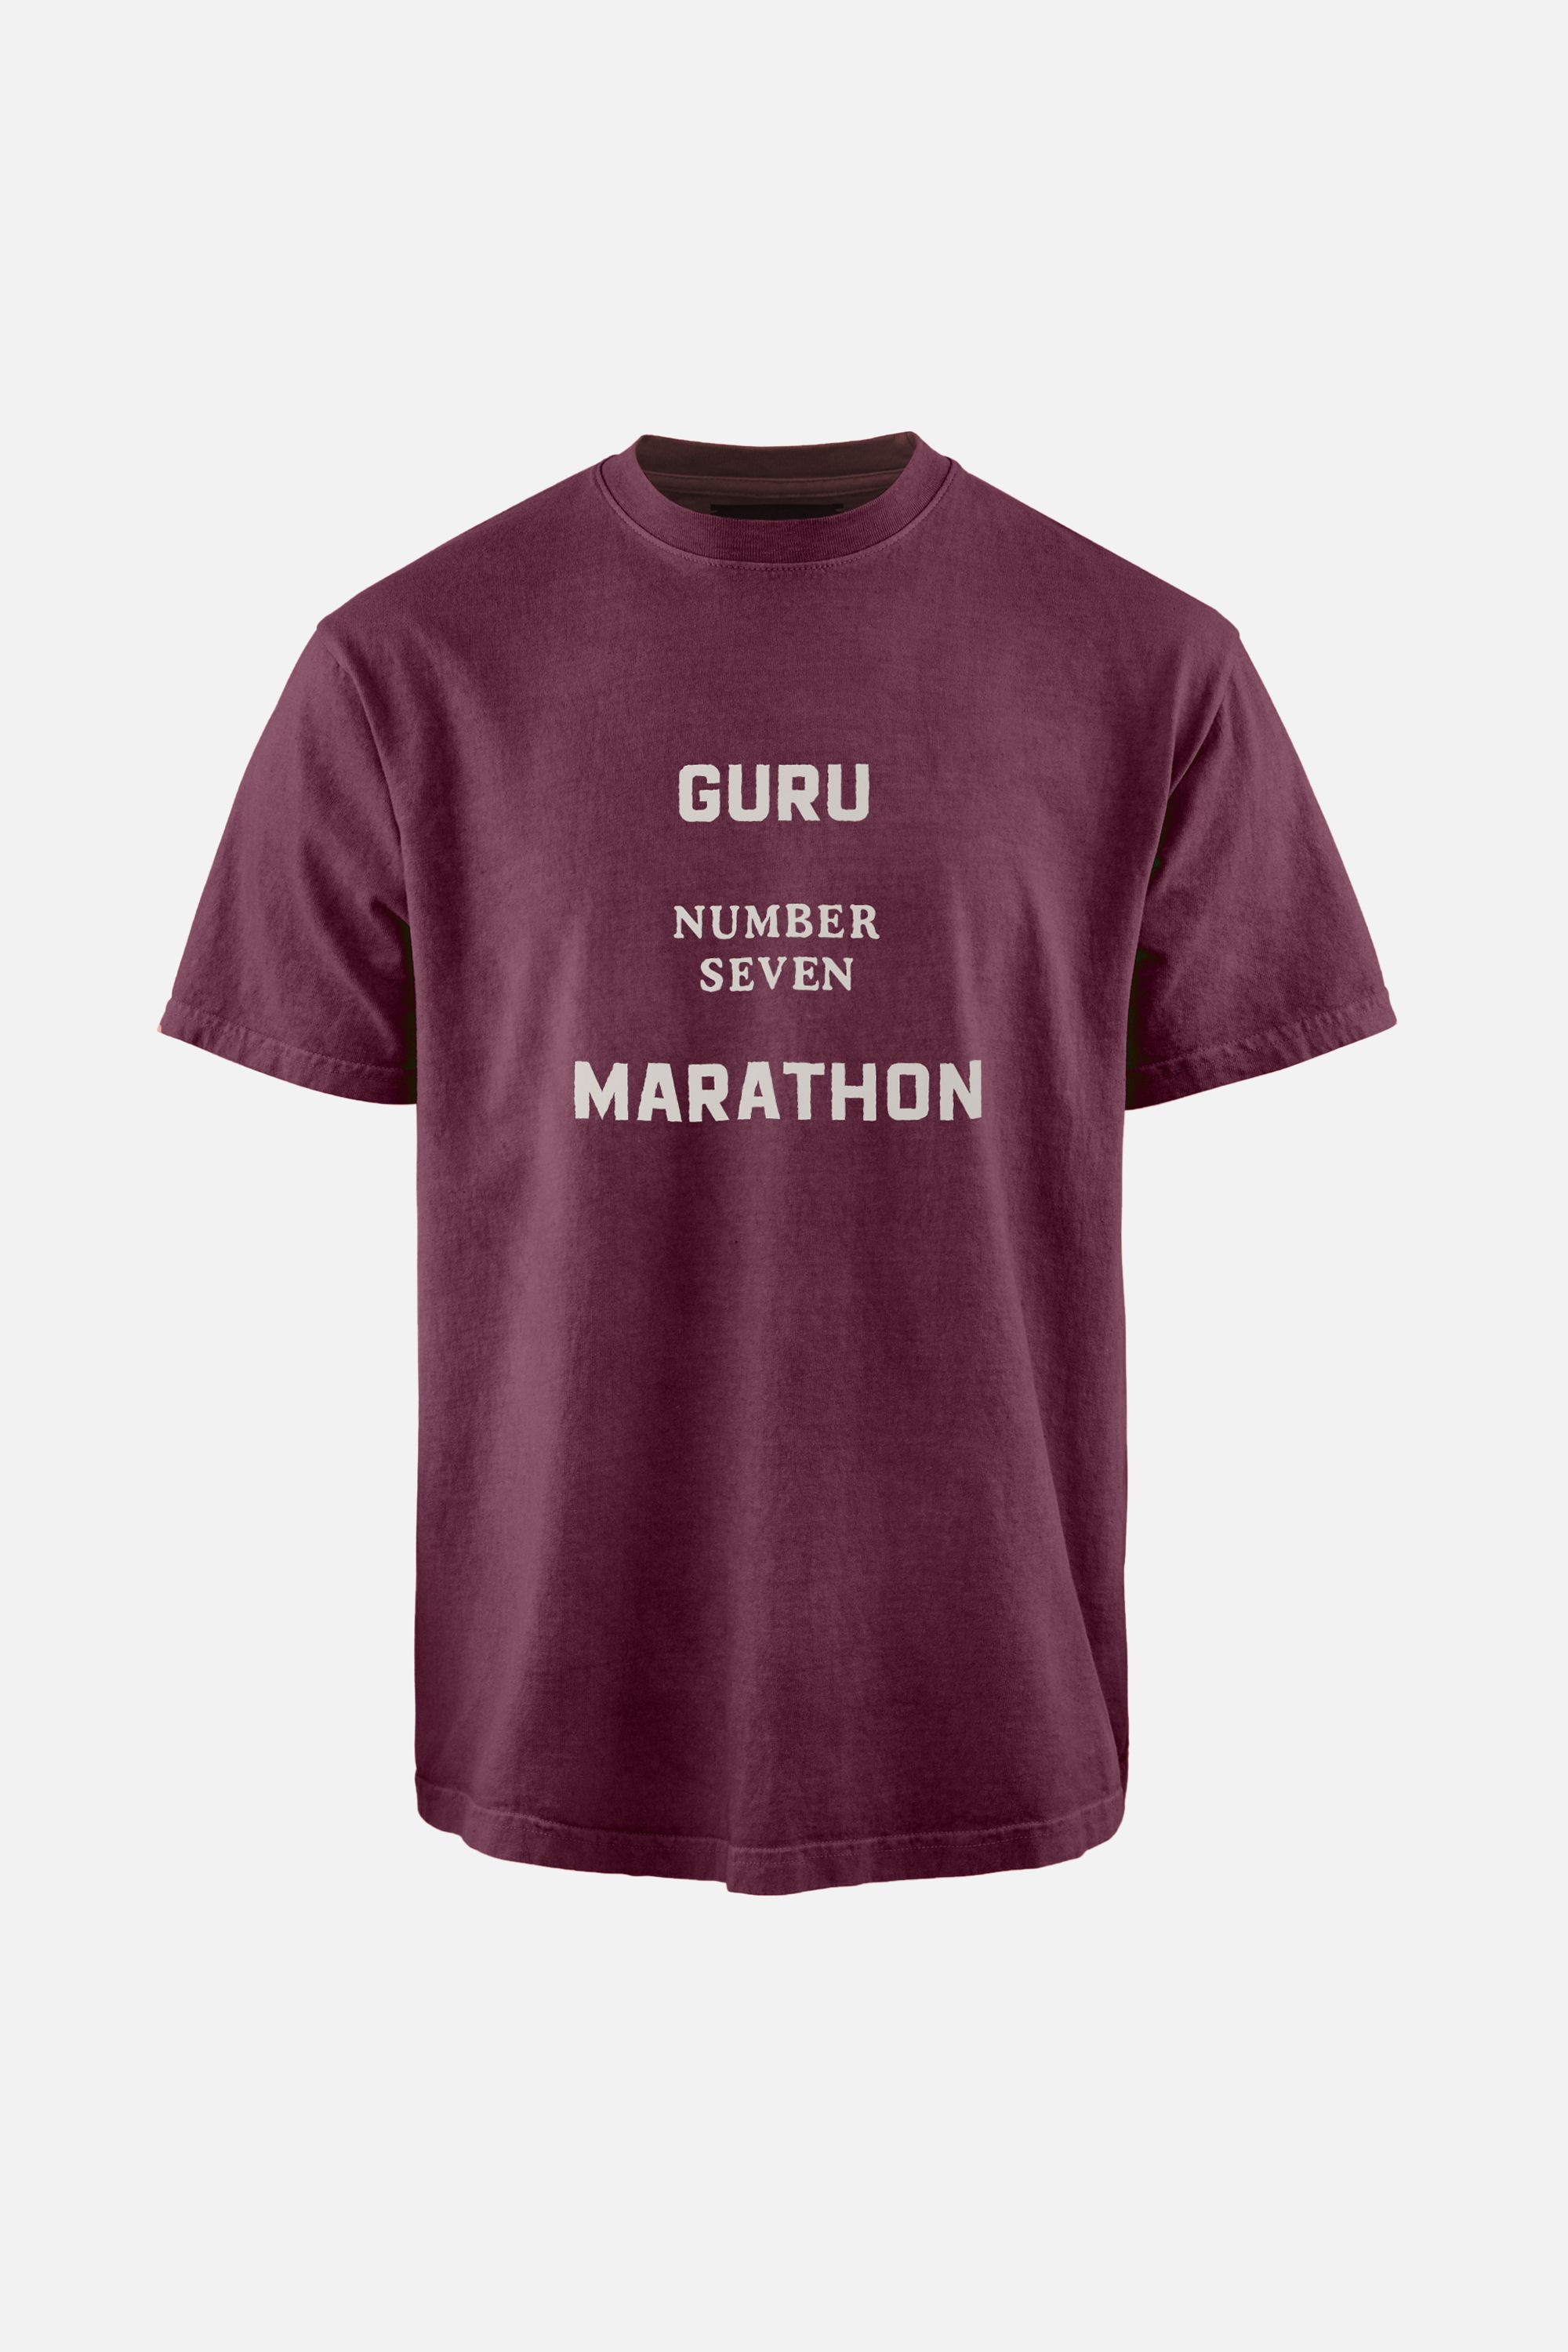 Karuna Short Sleeve T-Shirt, Guru Marathon